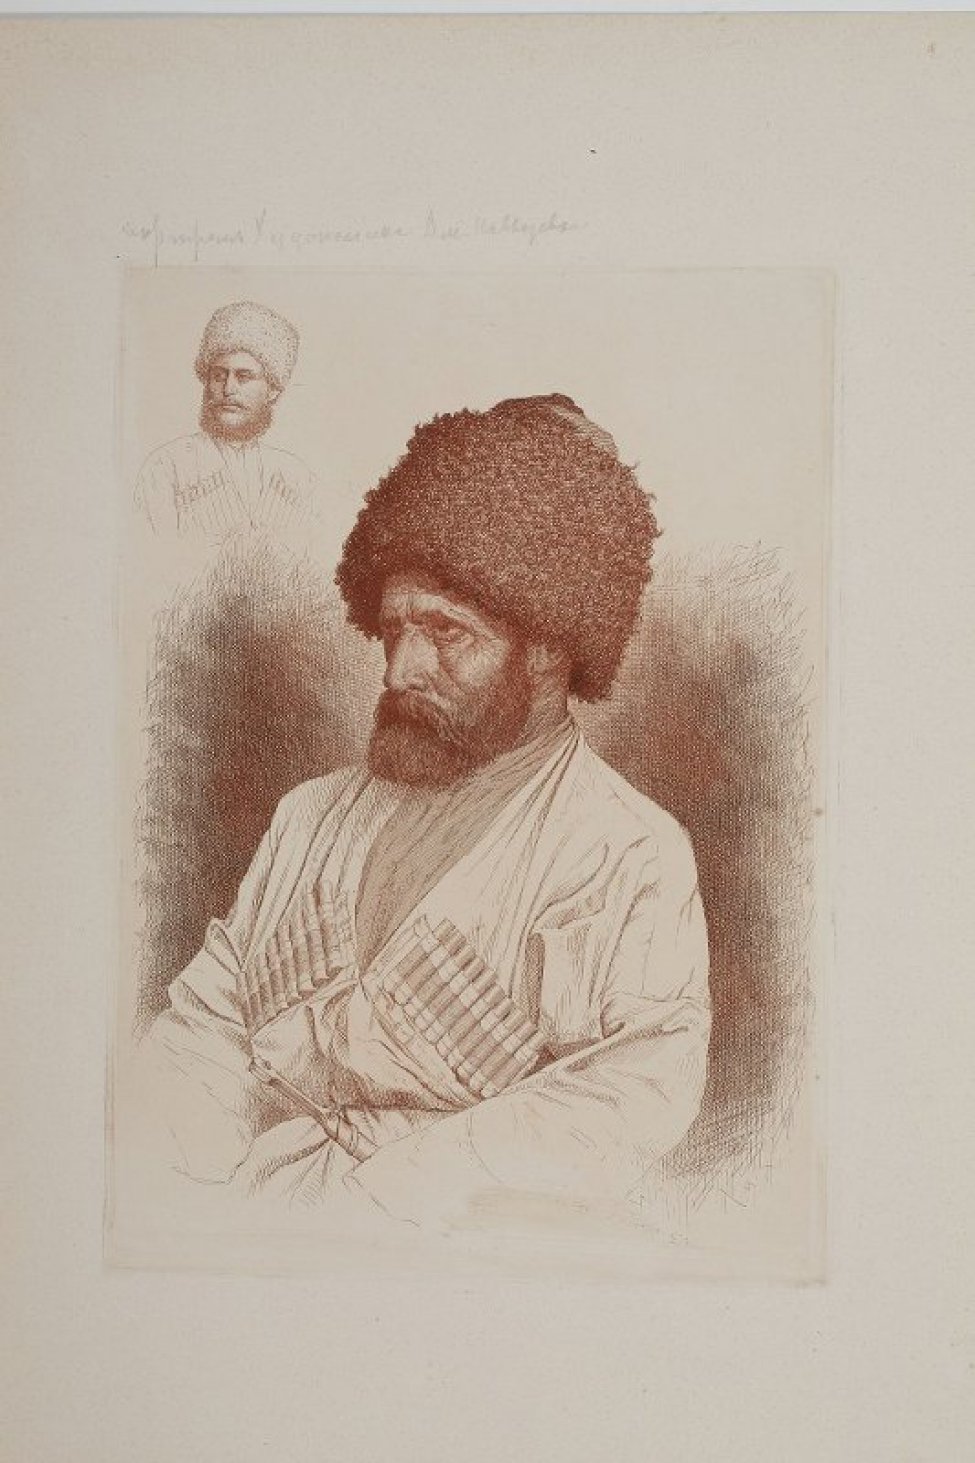 Поясное изображение  пожилого мужчины  в трехчетвертном  повороте в лохматой шапке, кавказской одежде, кинжалом у пояса.